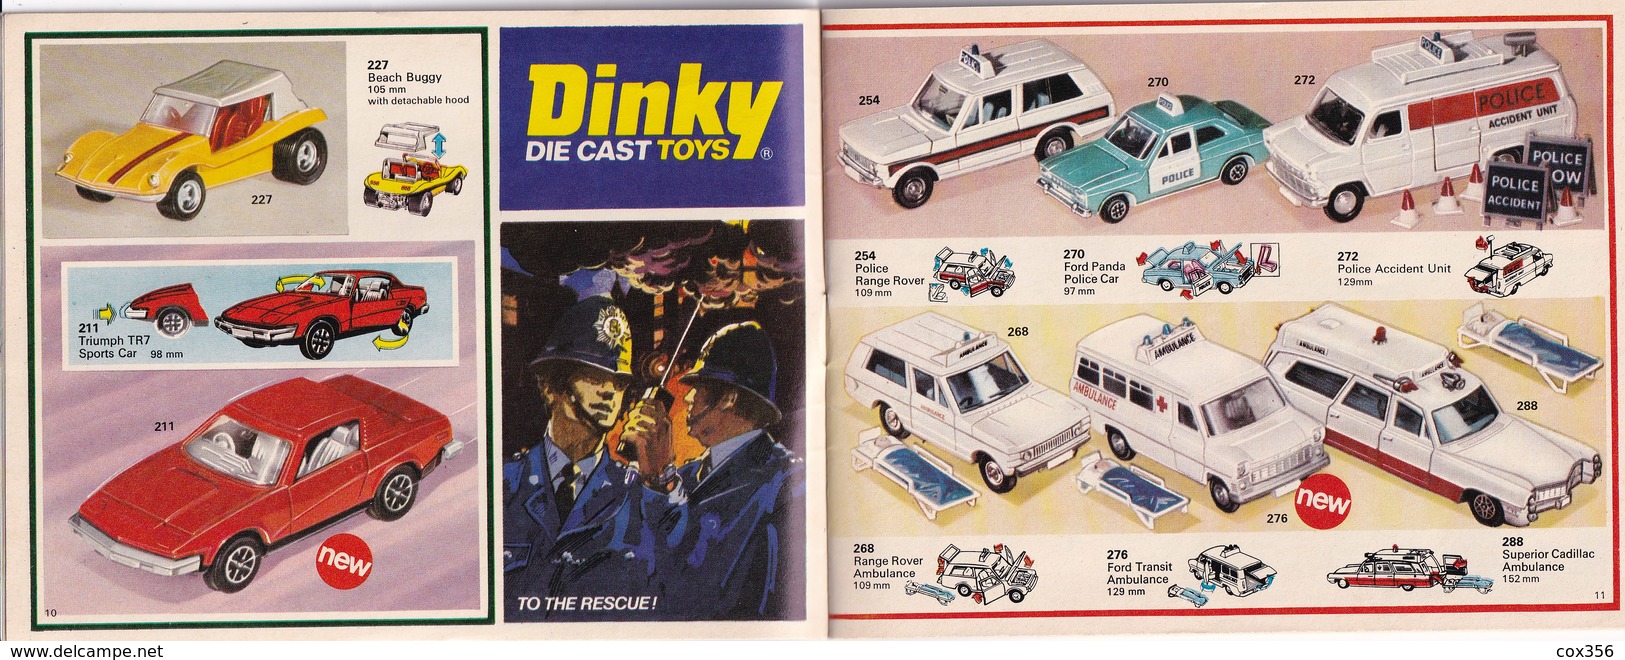 DINKY TOYS CATALOGUE DINKY DIE CAST TOYS N 12 - Hobby Creativi